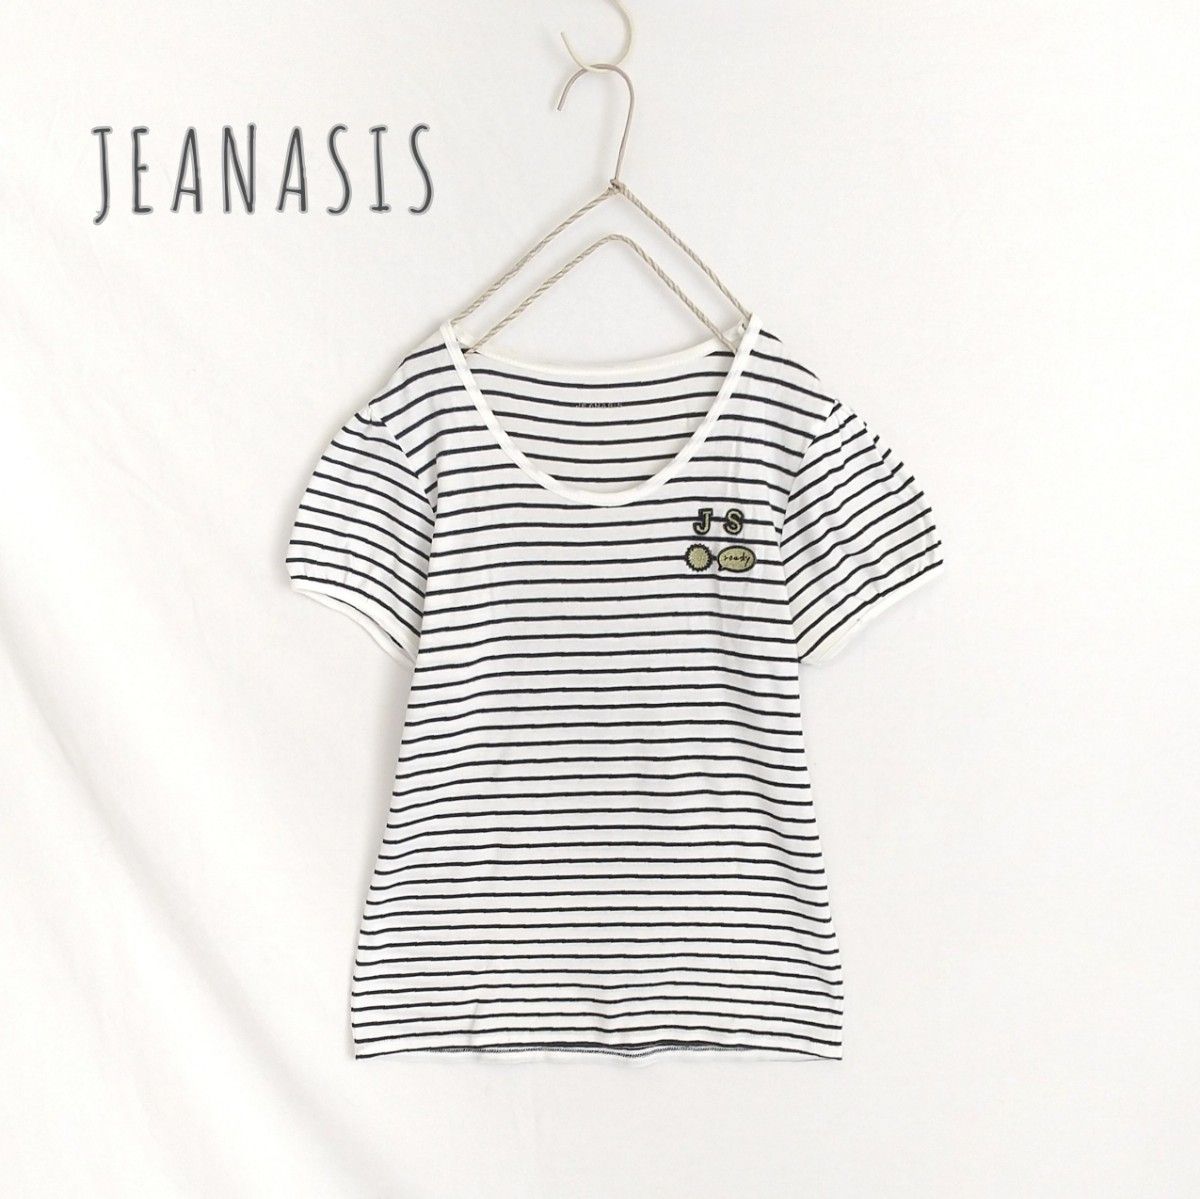 【 JEANASIS 】ロゴワッペンTシャツ 綿100% 半袖Tシャツ パフスリーブ ボーダーTシャツ